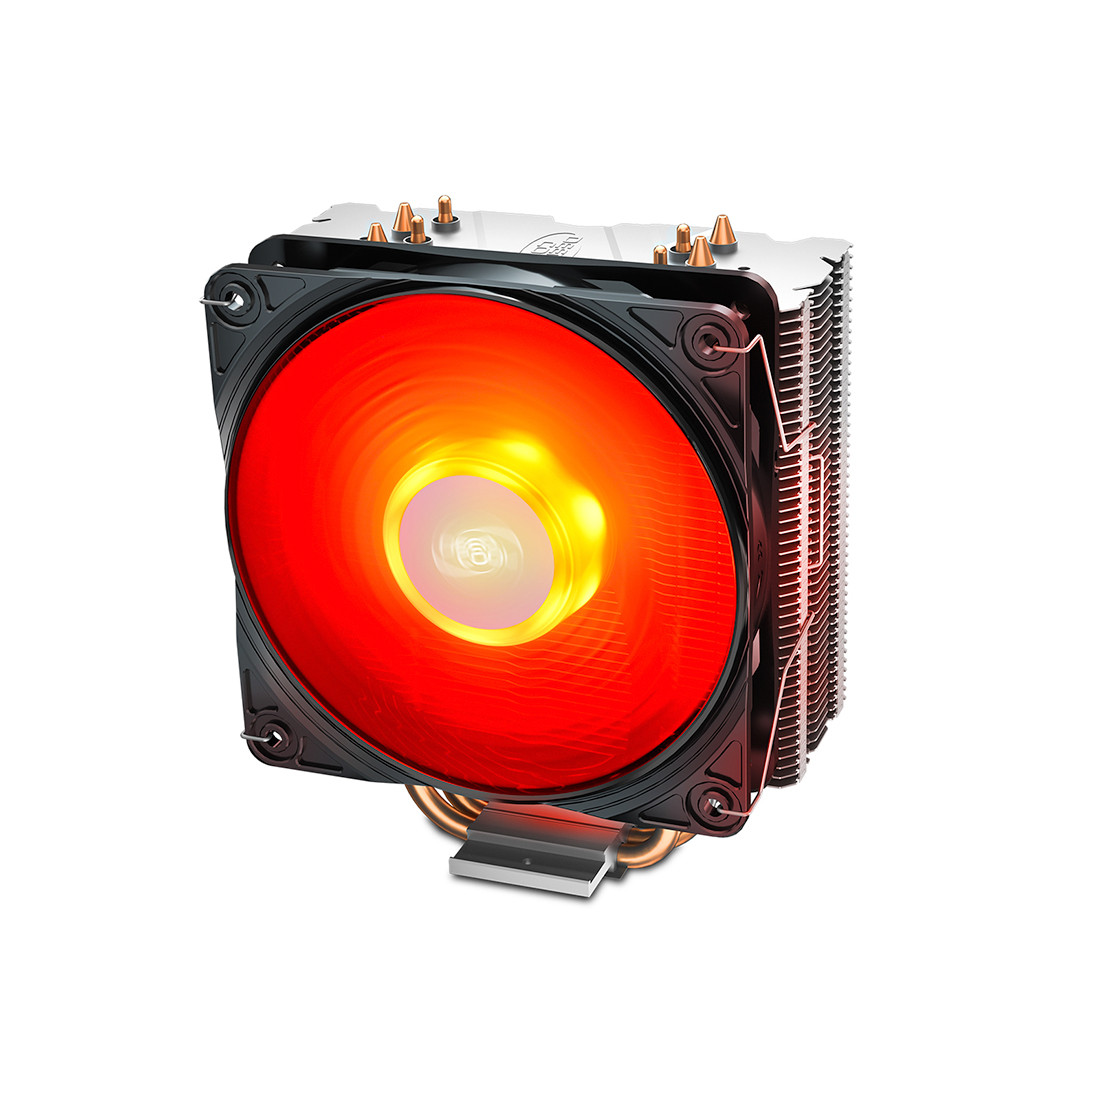 Кулер для процессора с красной подсветкой GAMMAXX 400 V2 RED от Deepcool